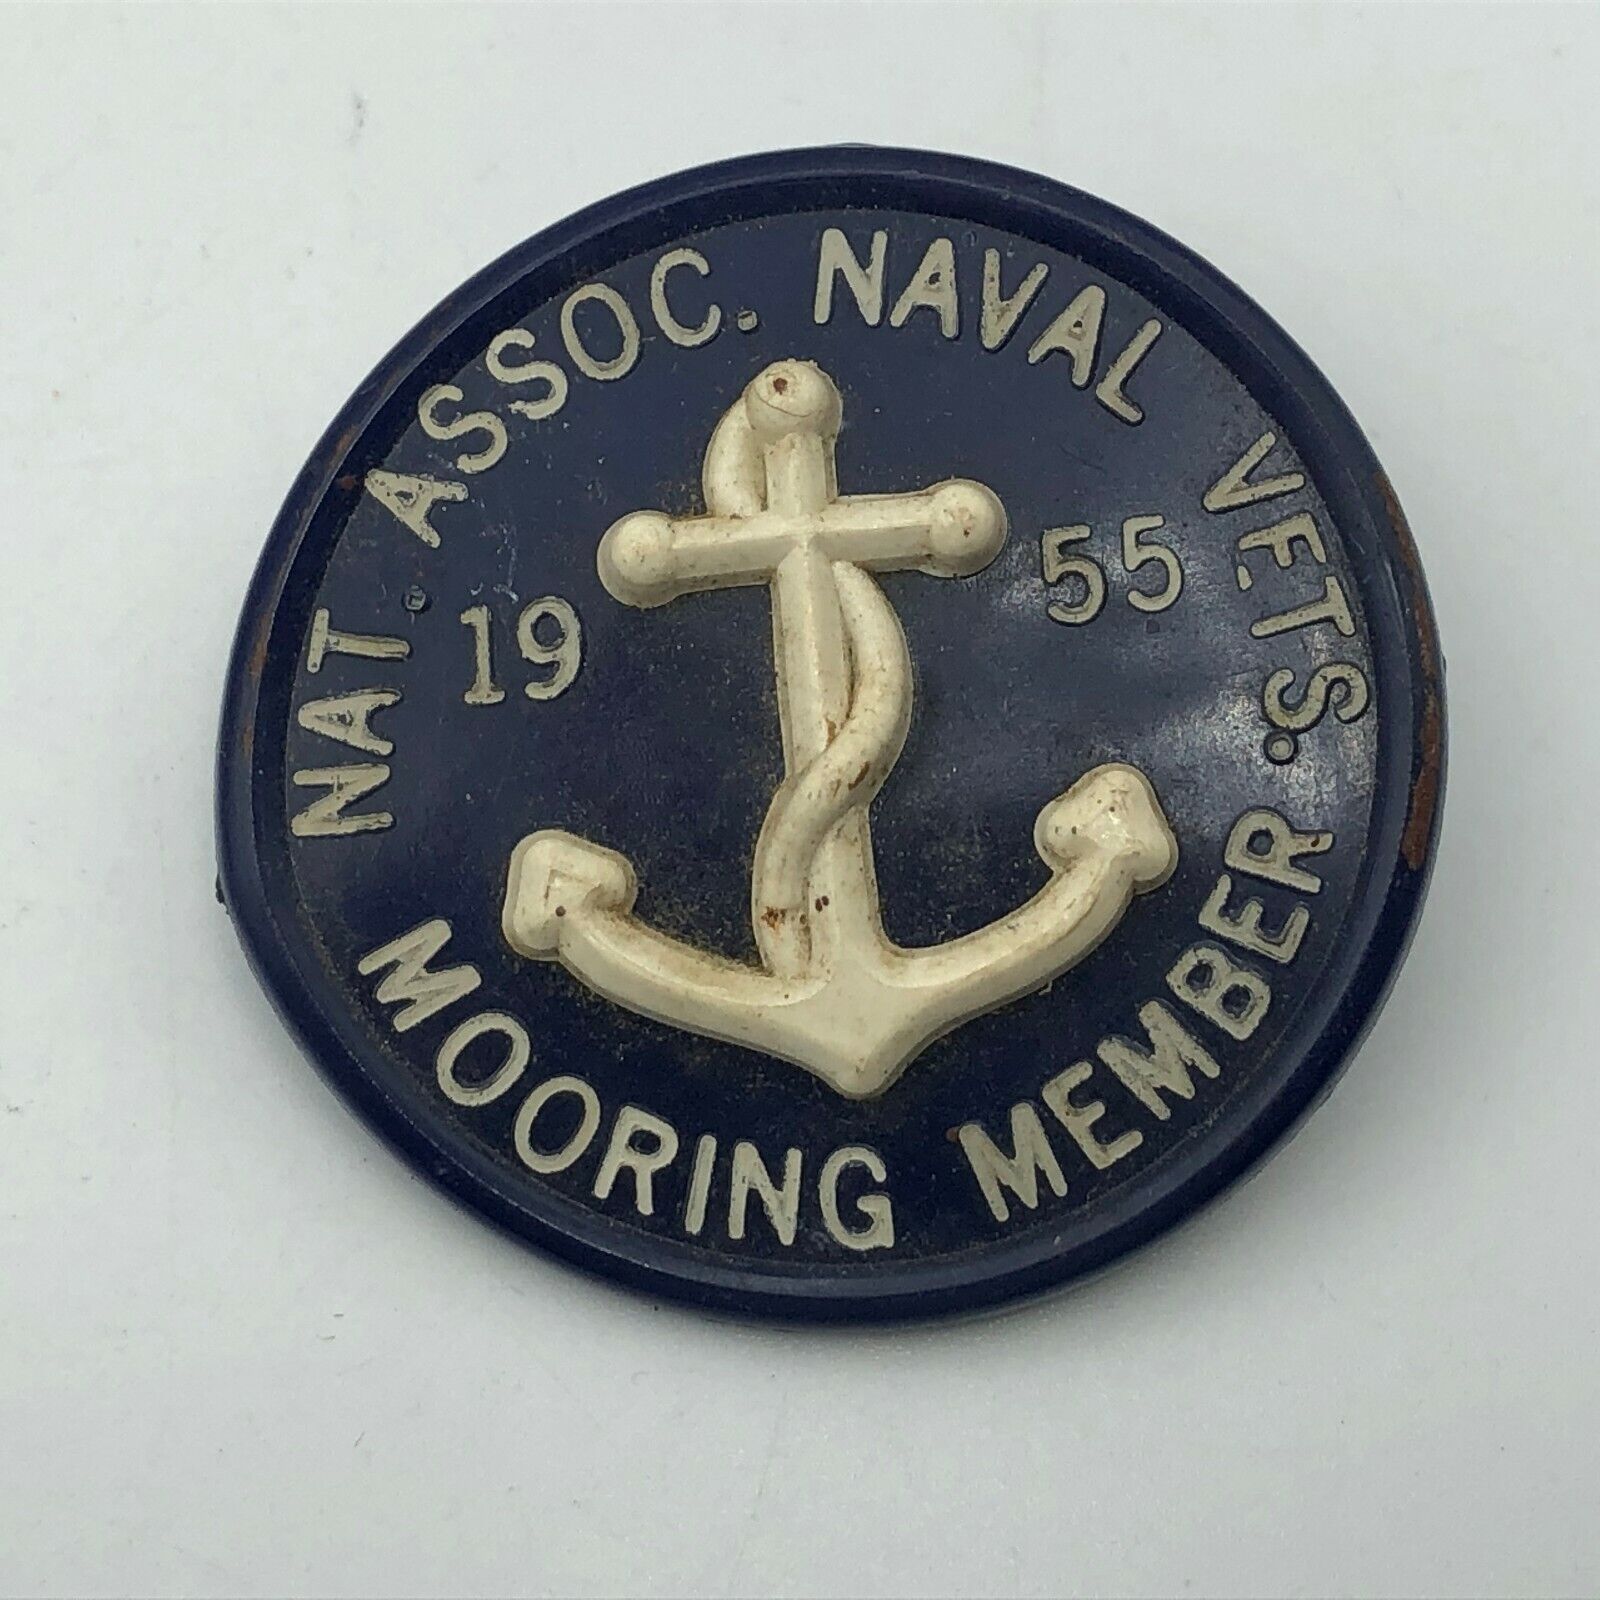 1955 NAT Assoc Naval Vets Mooring Member Pin Badge Vintage US Navy USN  N9 